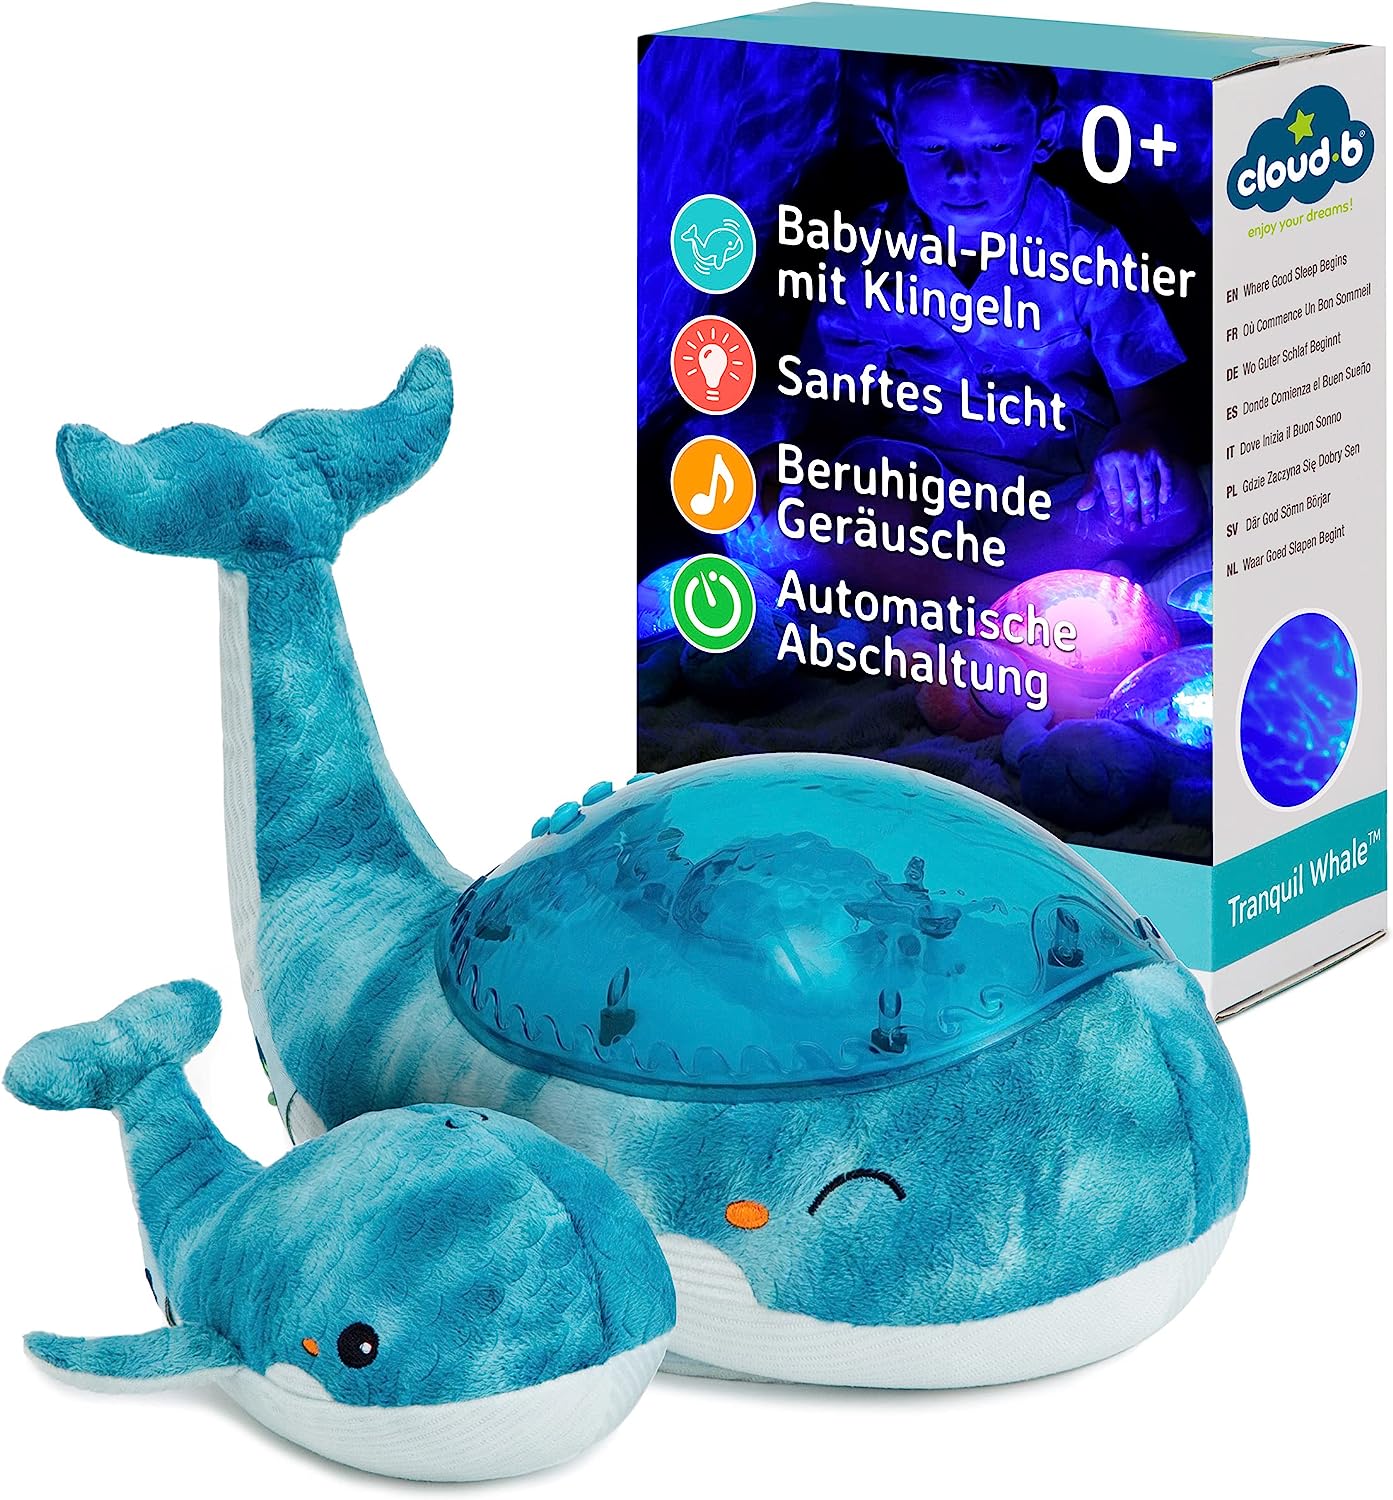 Tranquil-Whale-Family-blau-Nachtlicht-berlindeluxe-blauwal-blau-baby-mutter